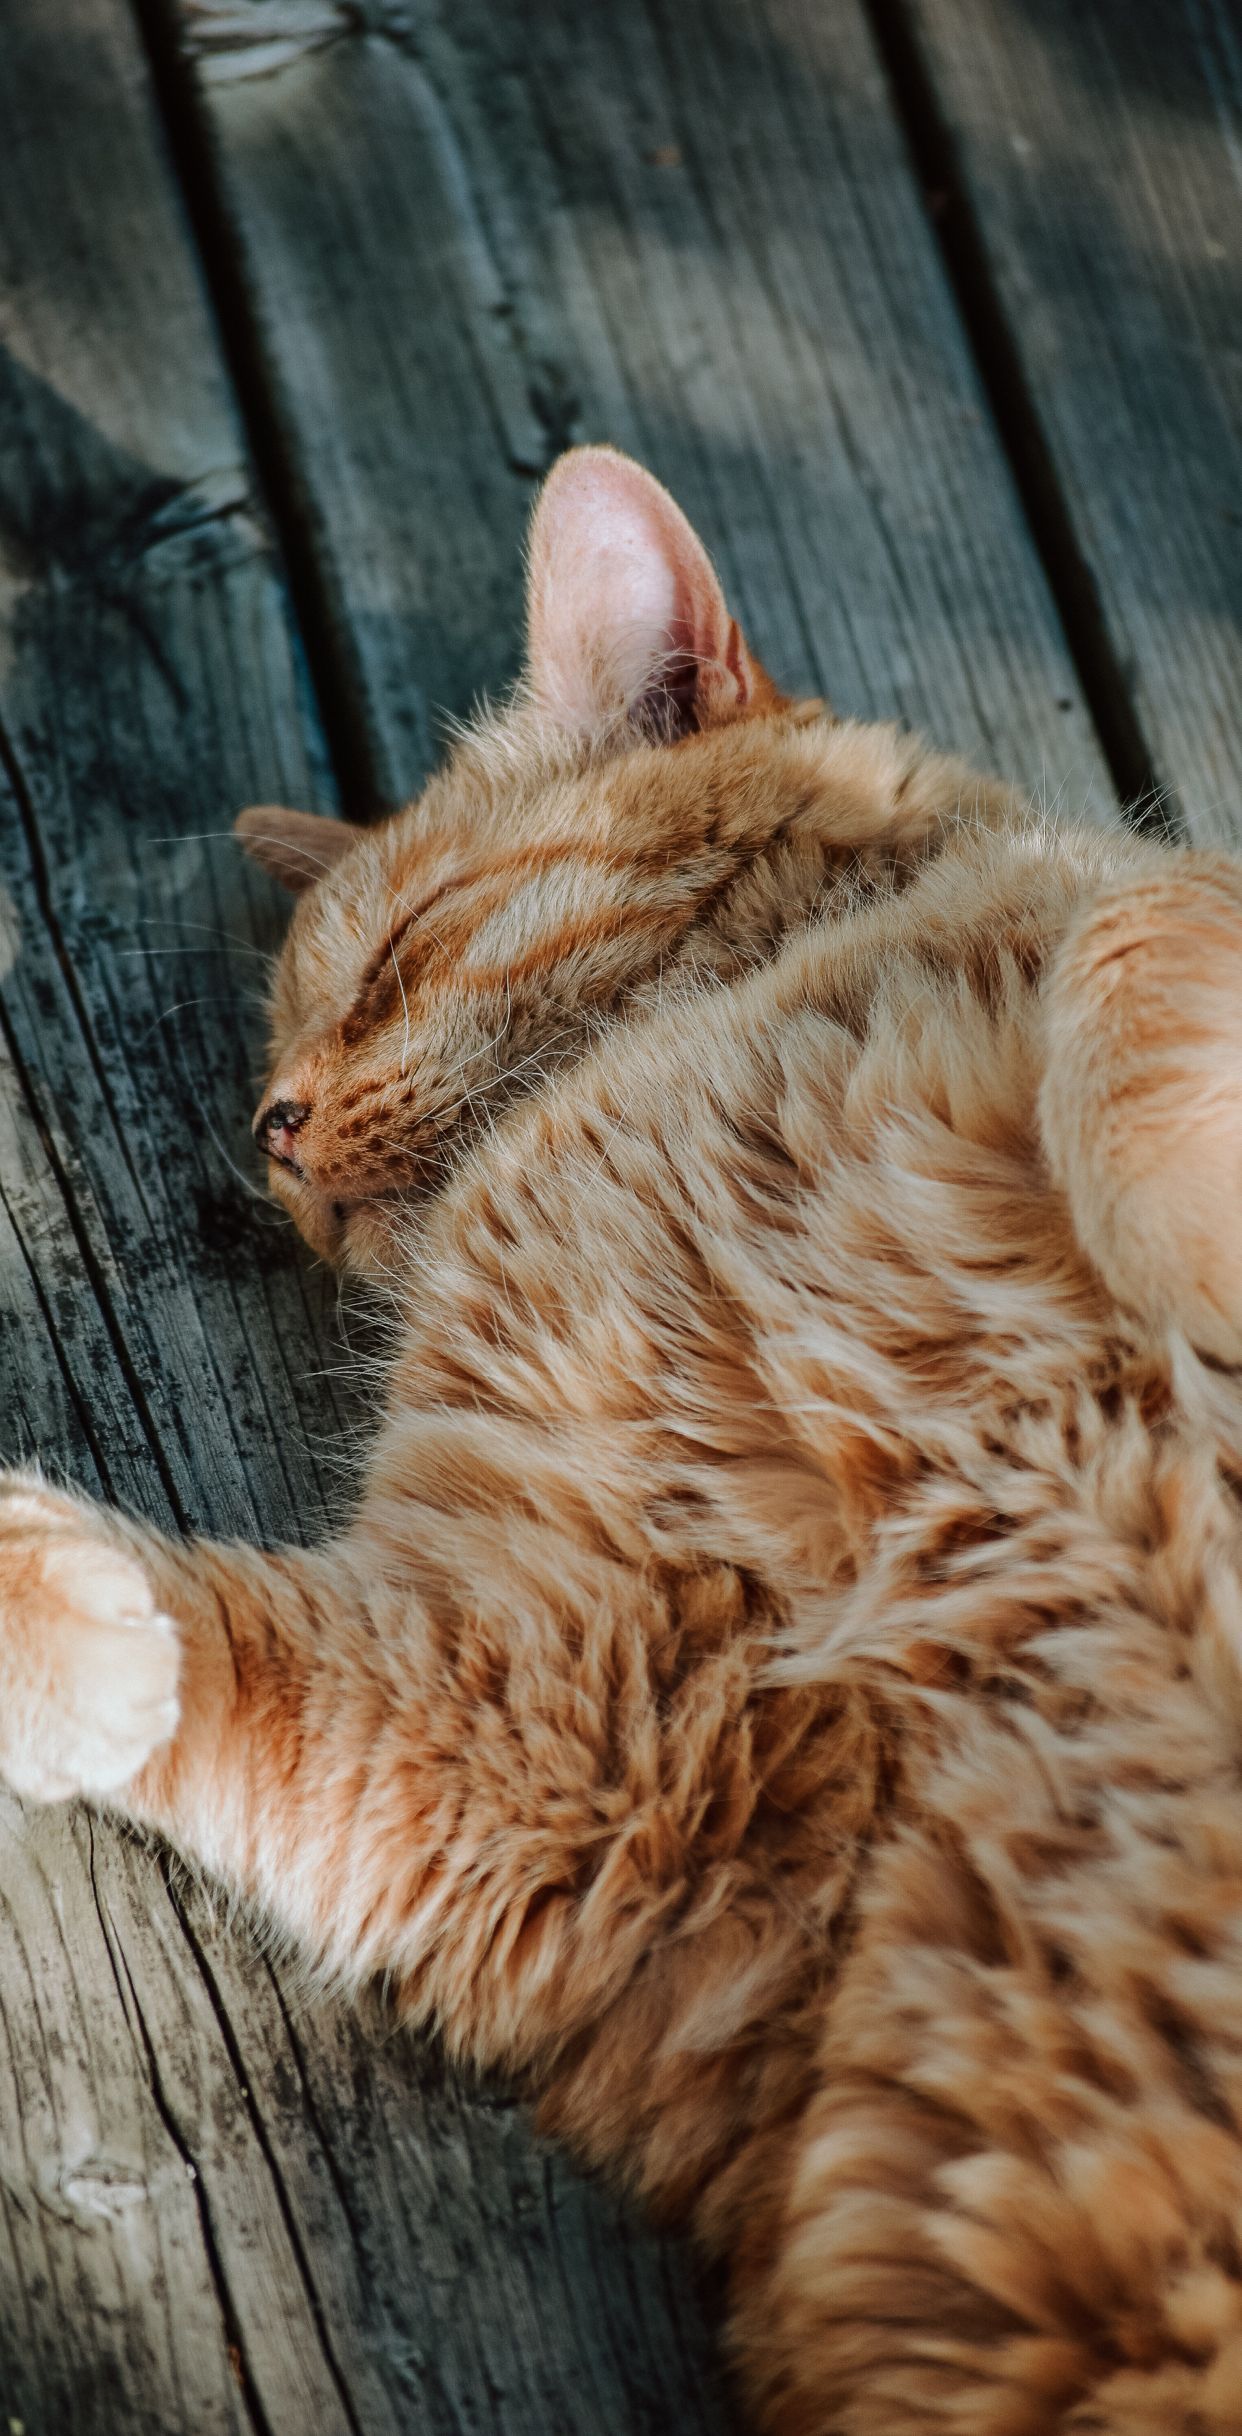 Cute cat wallpaper for iPhone models. Beautiful Sleeping Cat